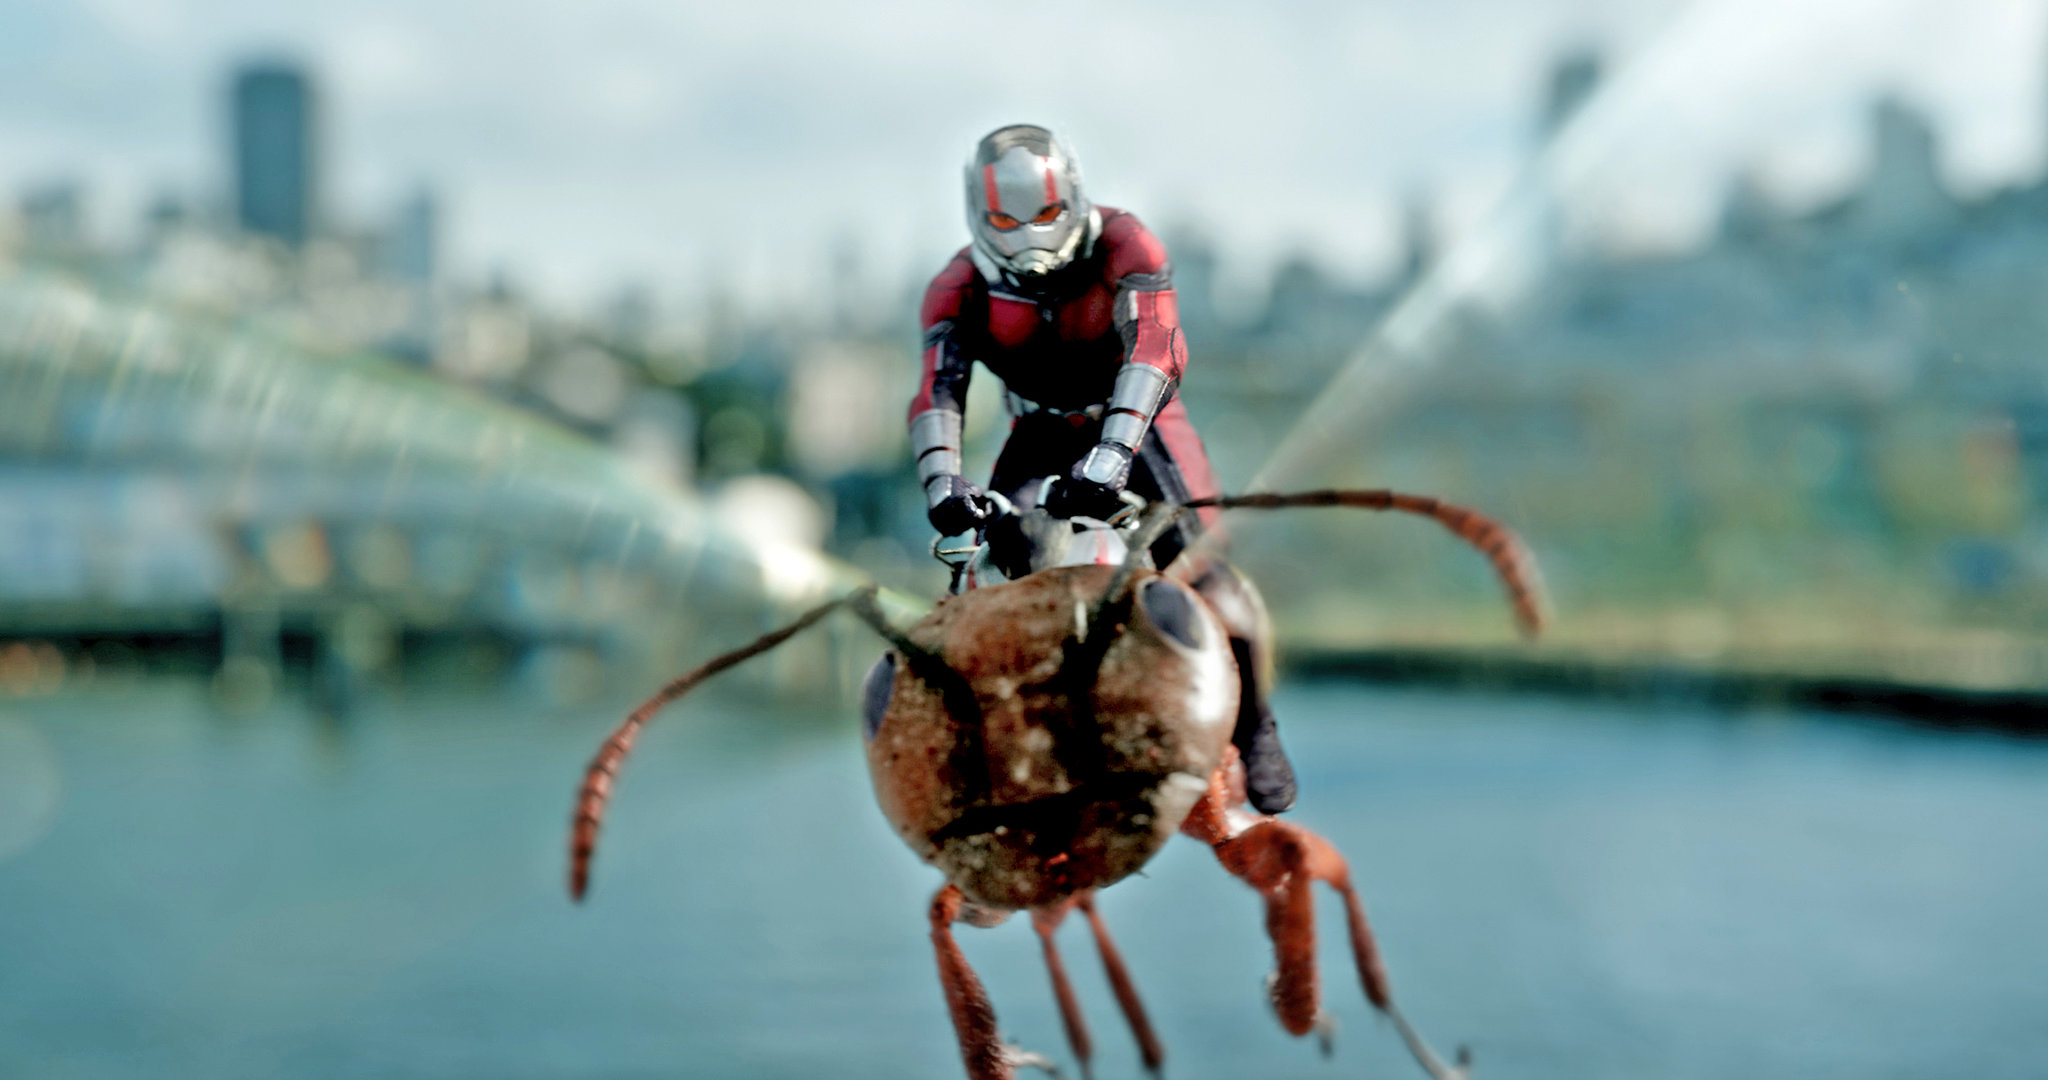 Ant-Man. Dir. Peyton Reed. Marvel Studios. 2015.